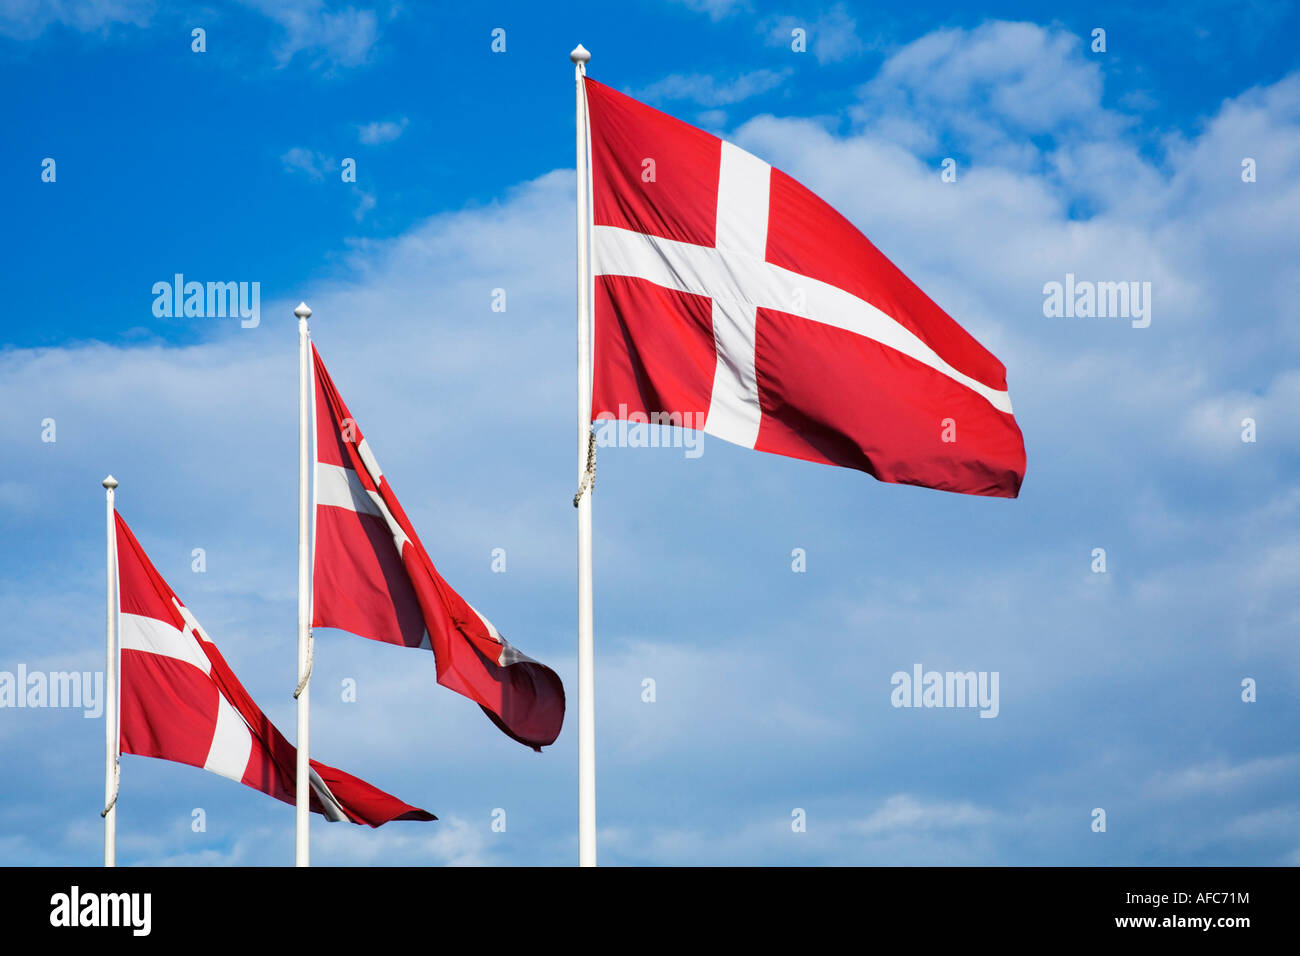 Banderas danesas contra un cielo azul con nubes Foto de stock